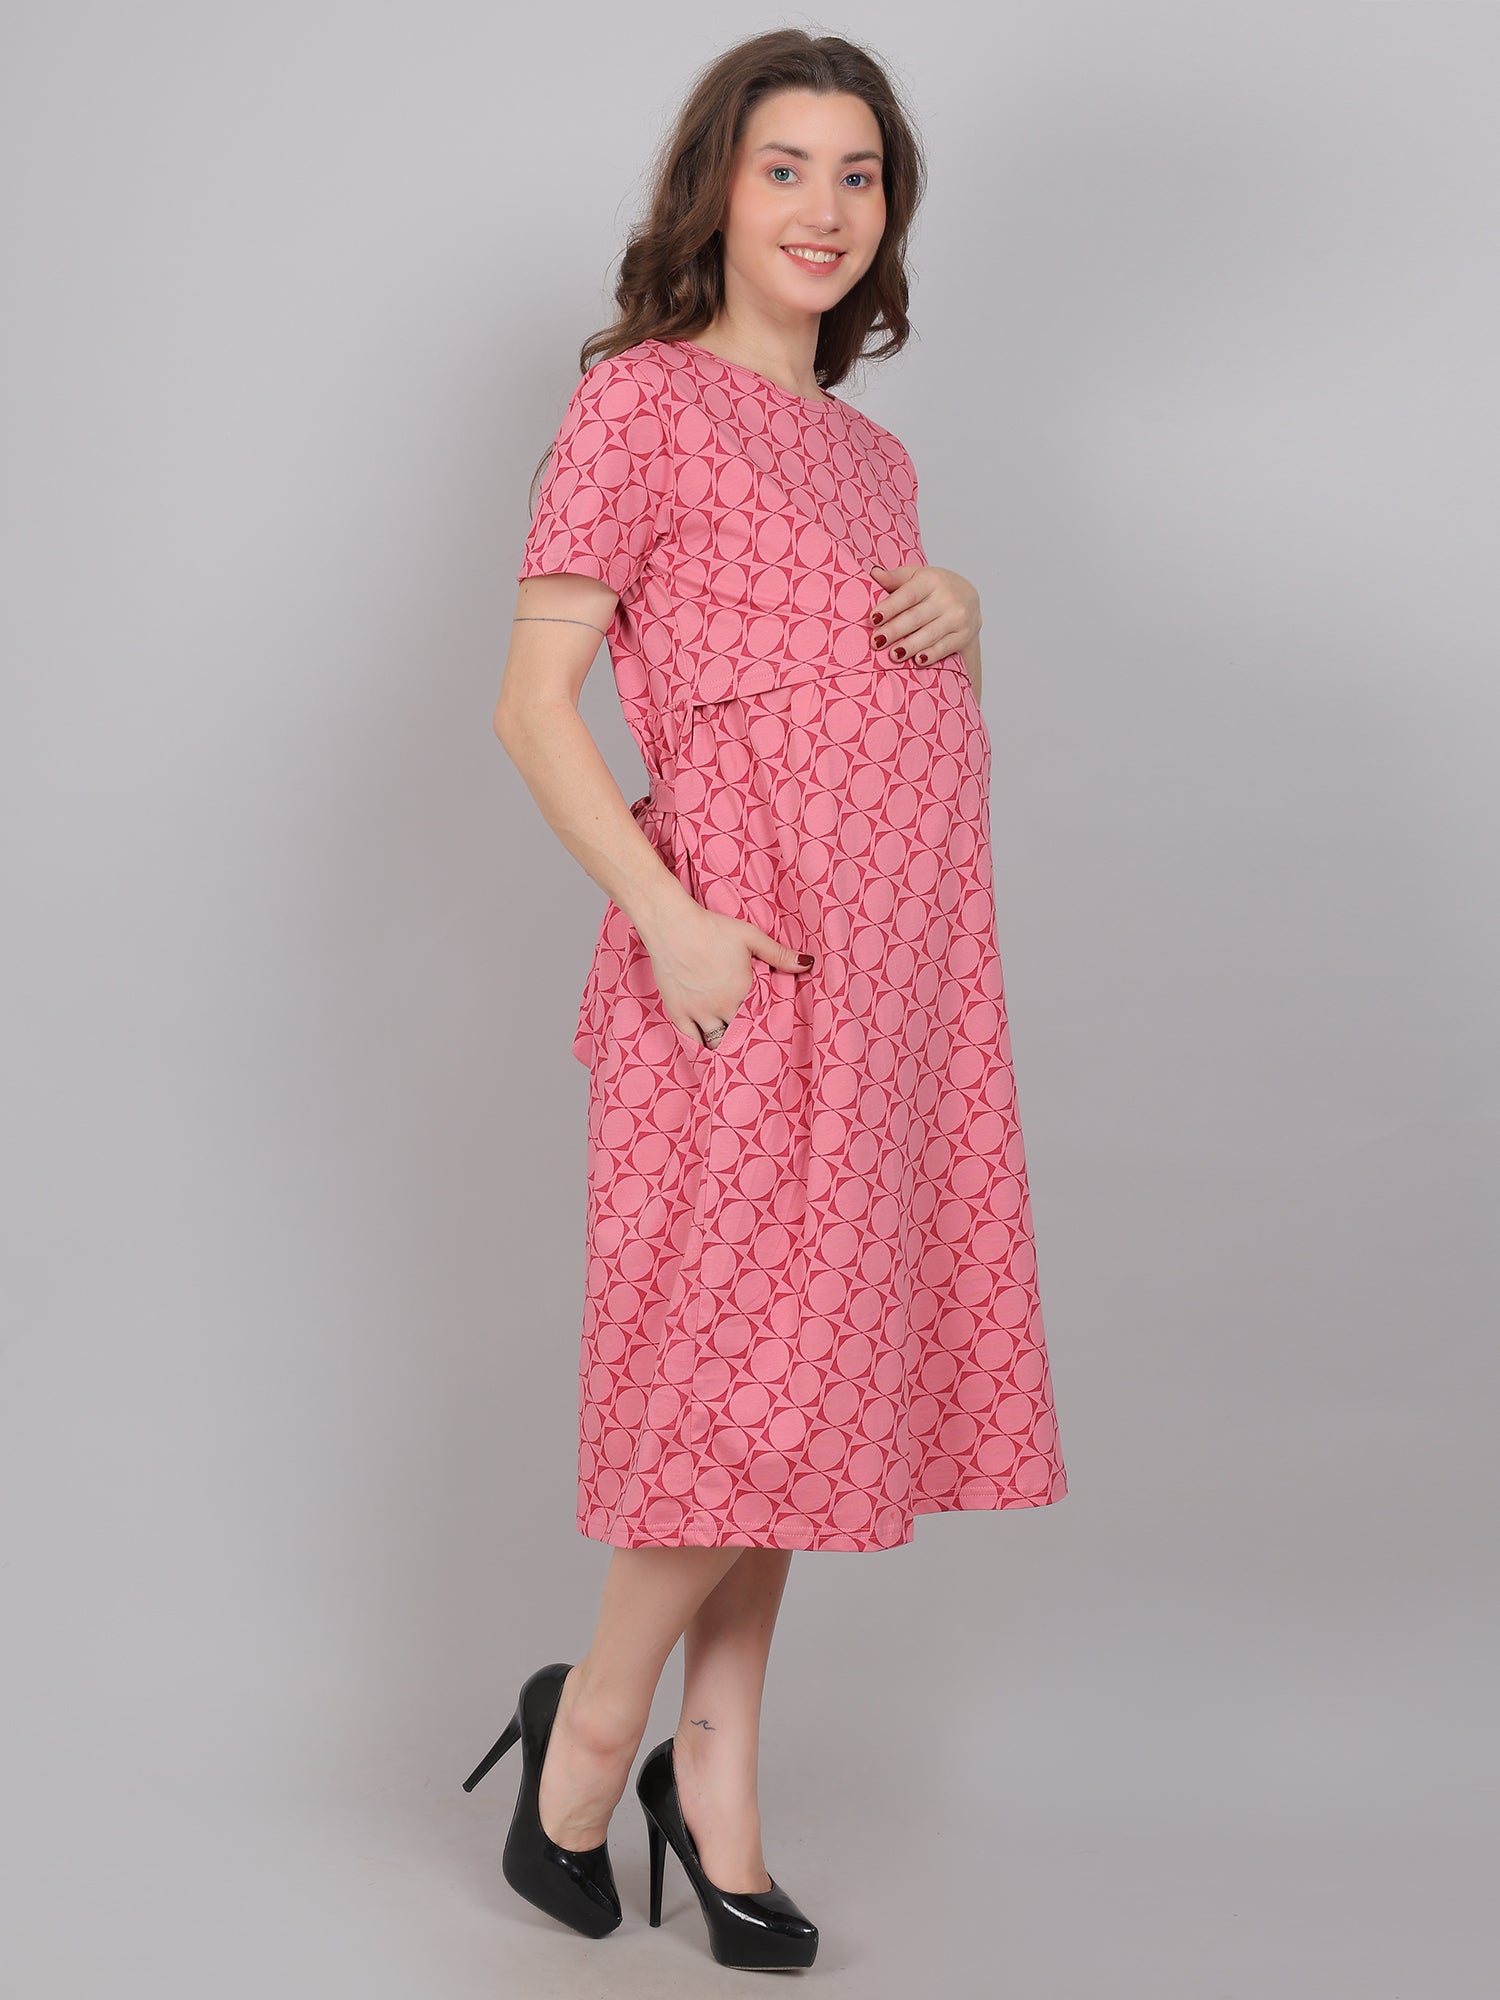 Pink Knitted Cotton Maternity Loungewear Dress